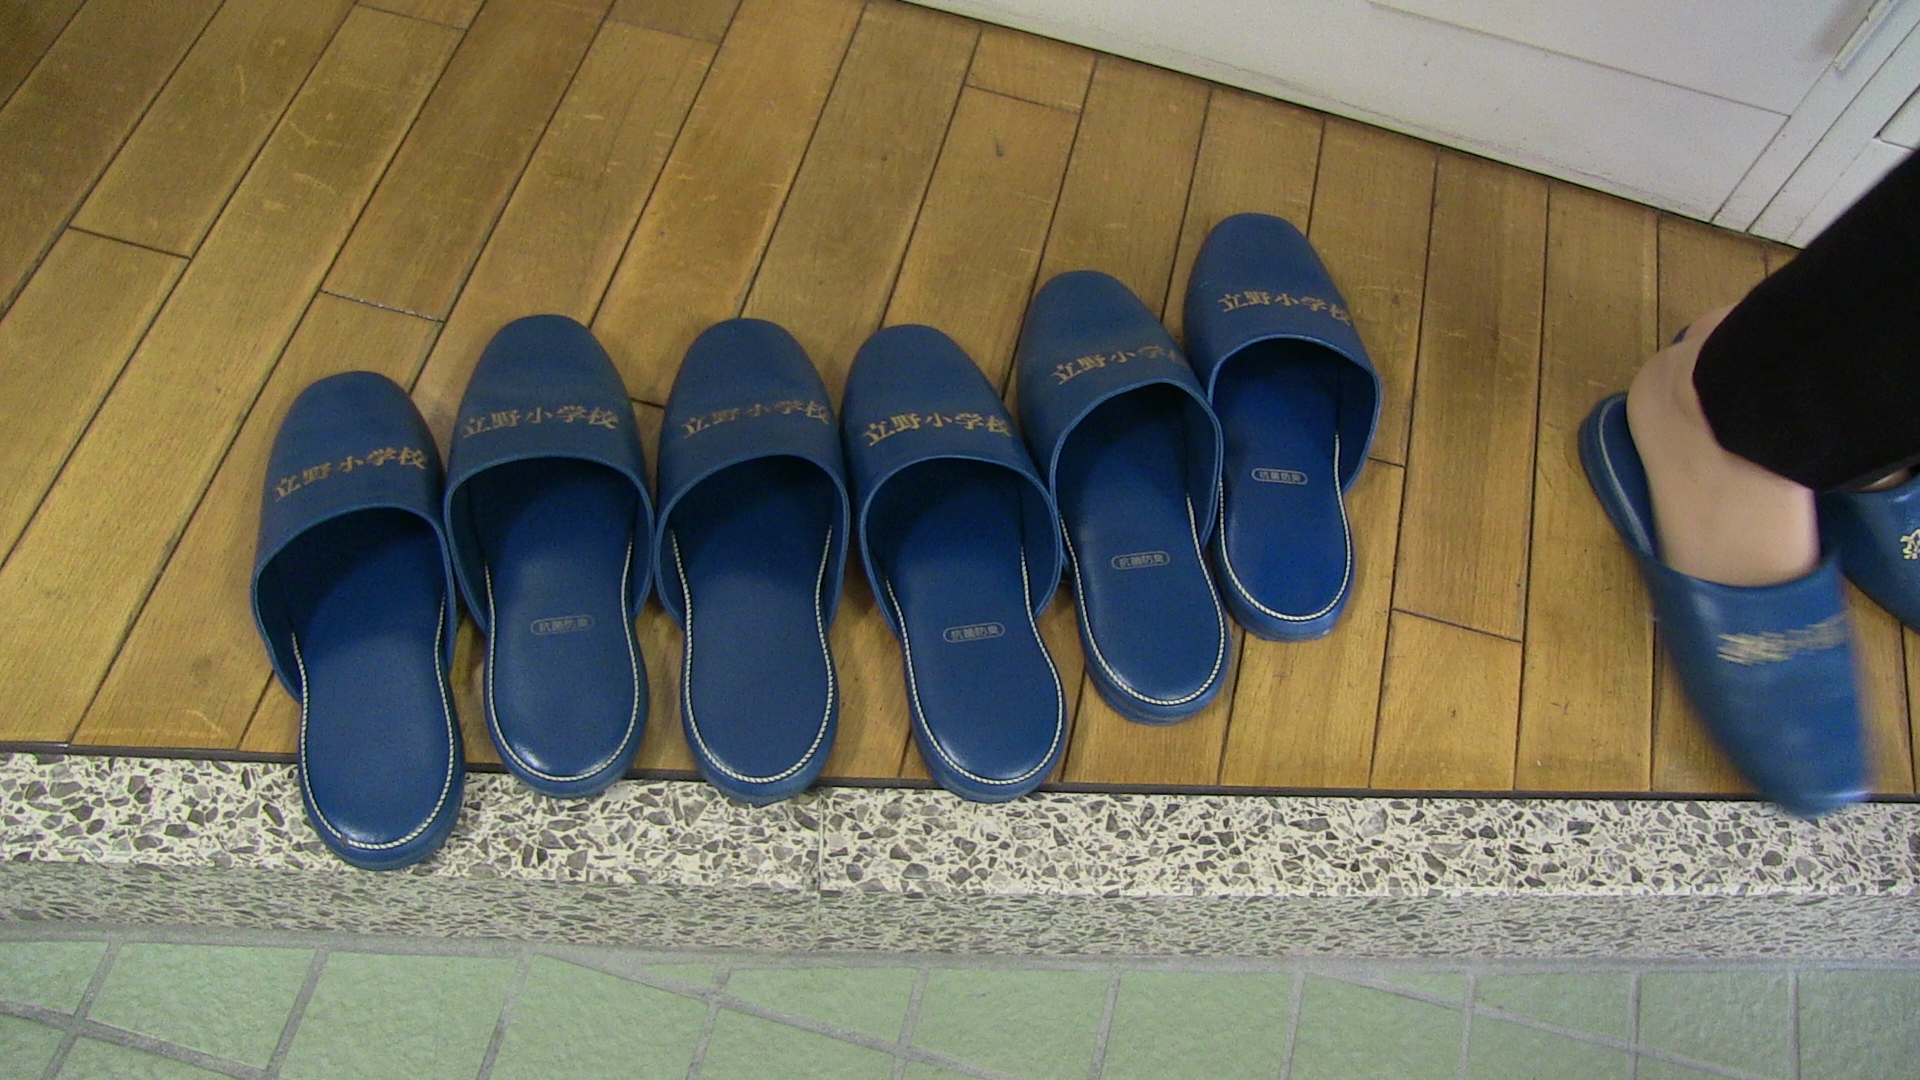 يخلع الضيوف أحذيتهم عند دخول المدرسة للحفاظ على نظافتها ويرتدون هذا الحذاء